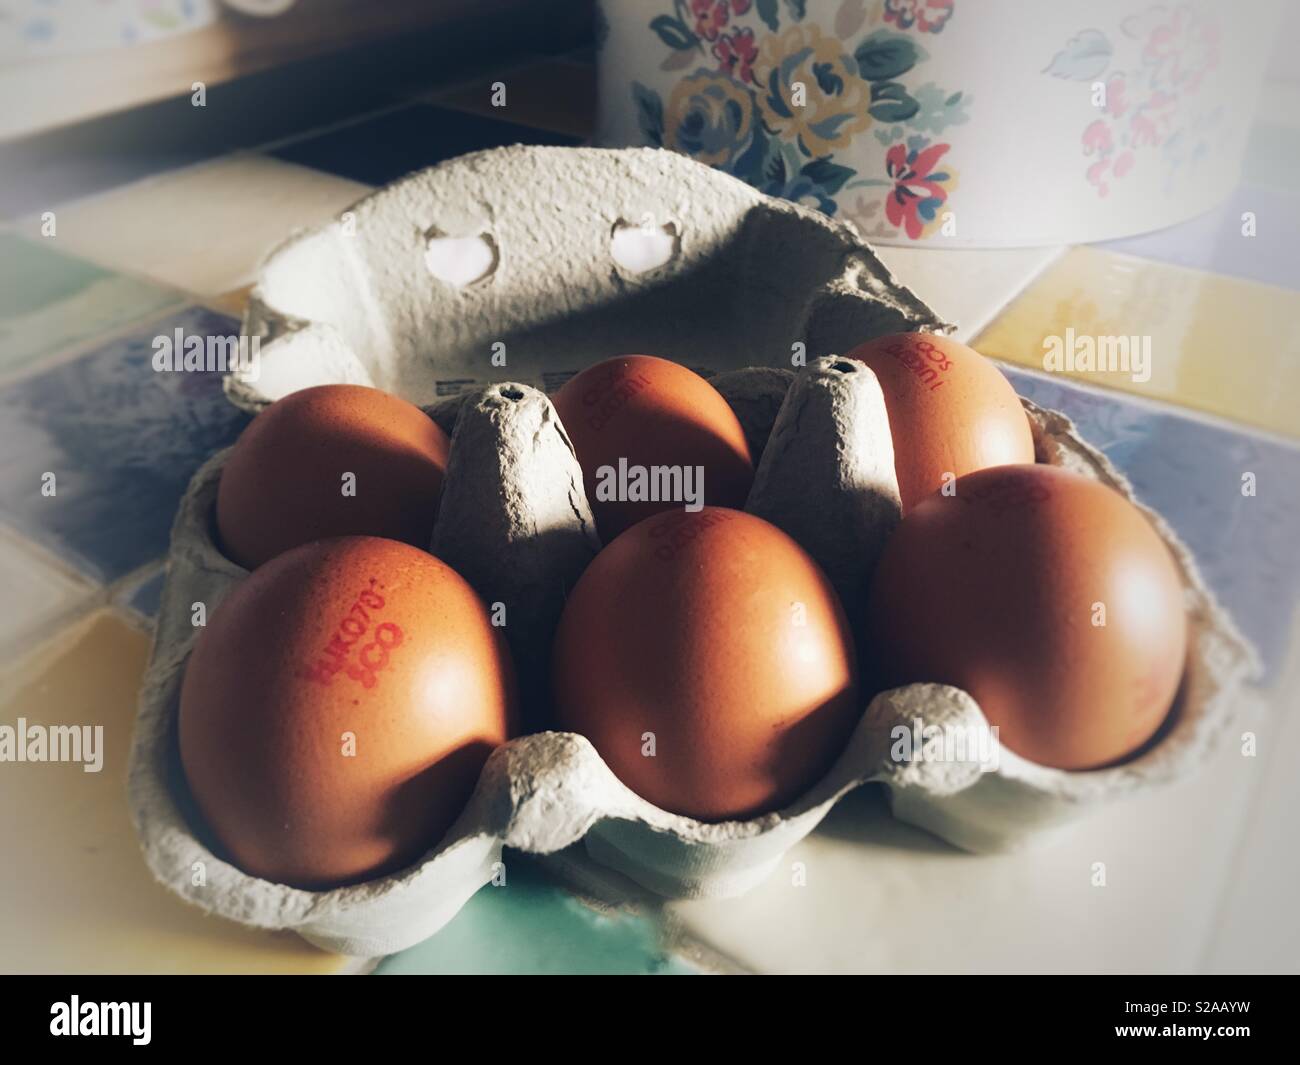 Scatola di colore marrone sei uova di galline su un piano di lavoro Foto Stock